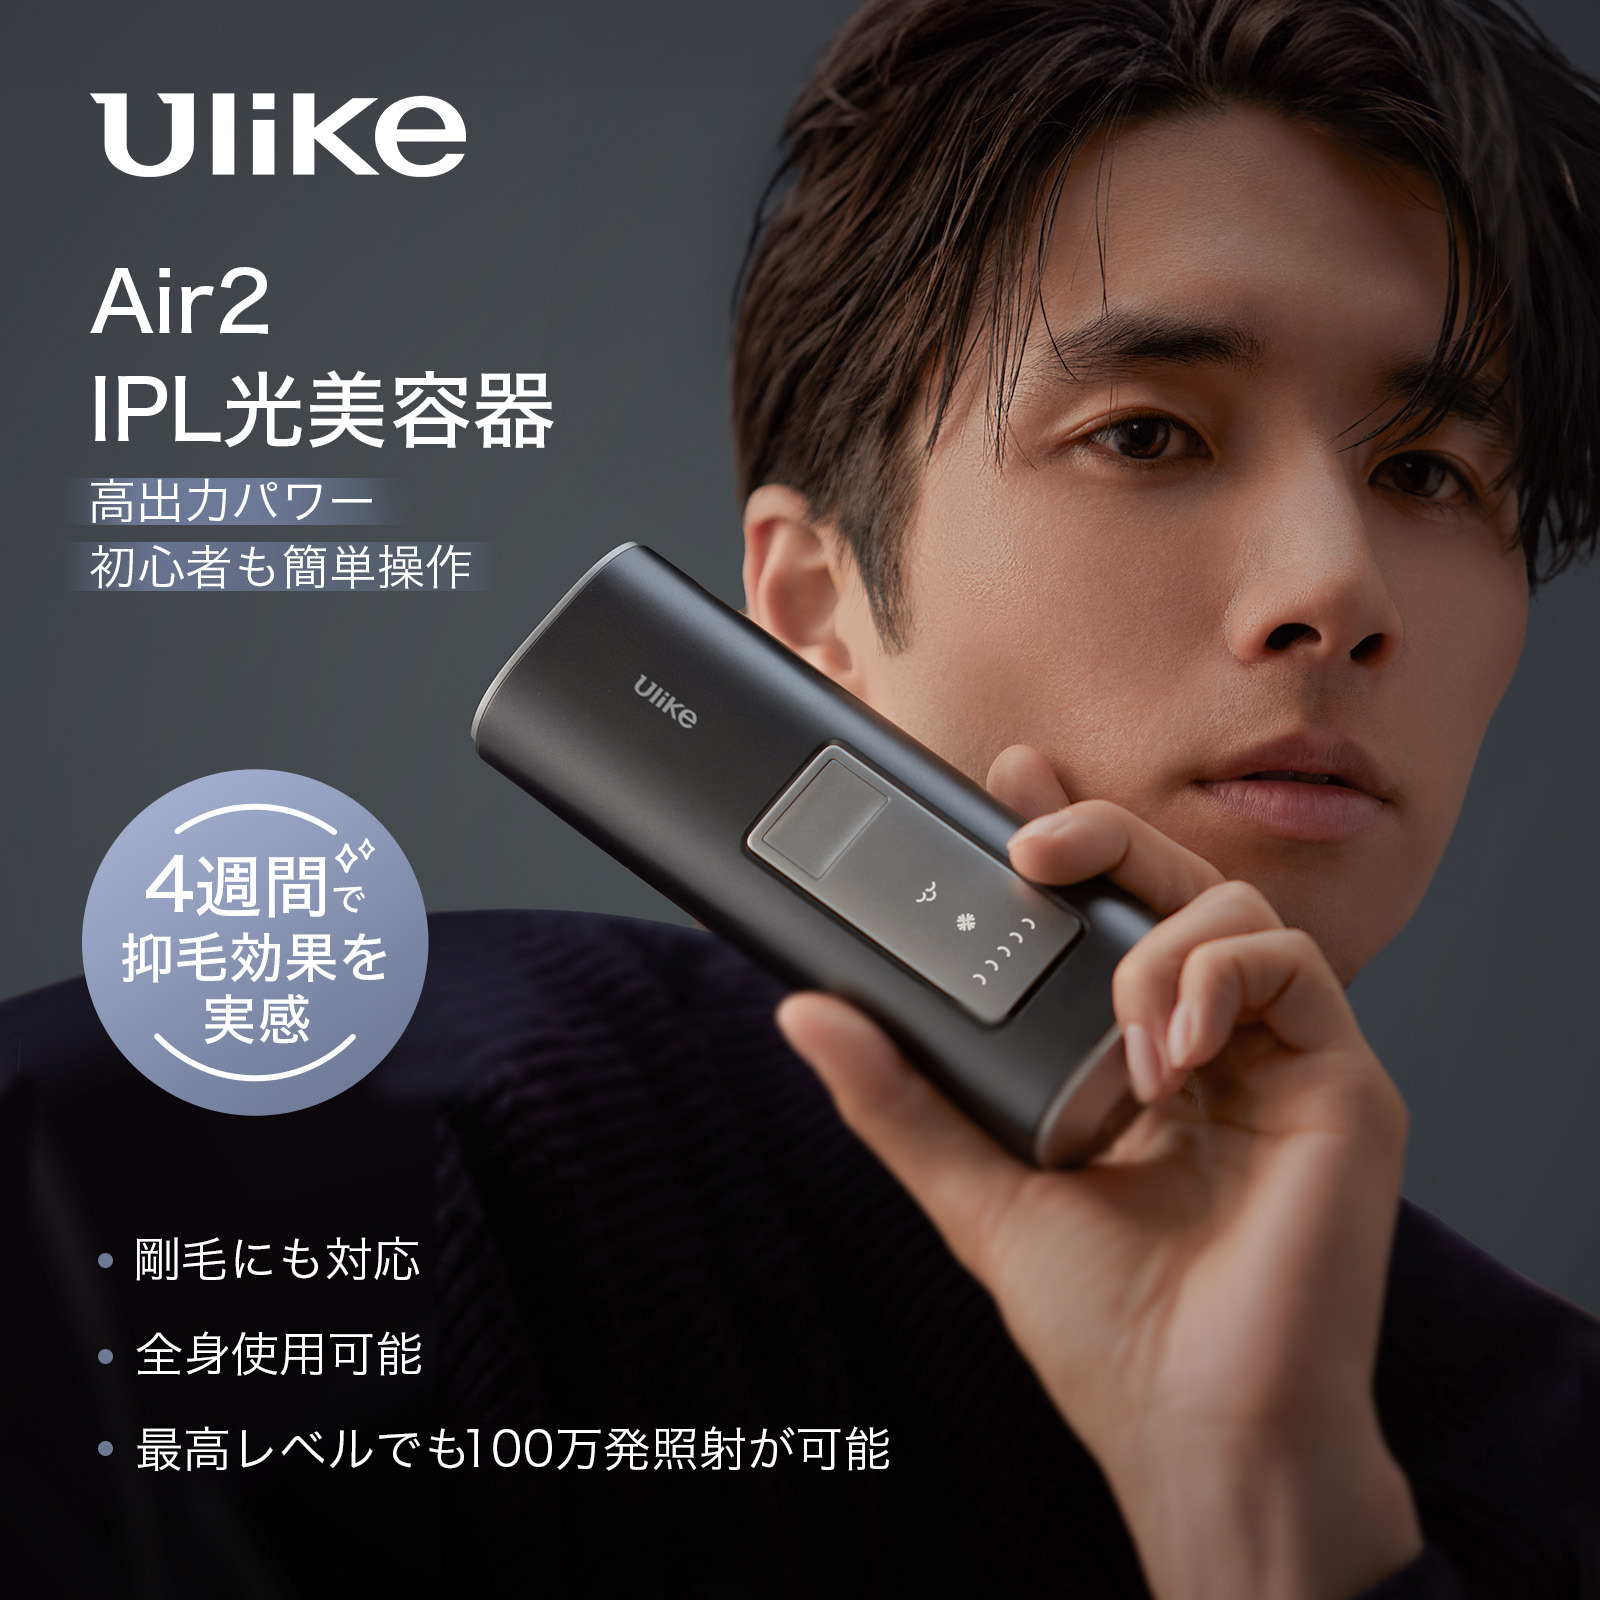 Ulike Air2 トータルケアセット 2年保証 サロン級光美容器 ハイパワー